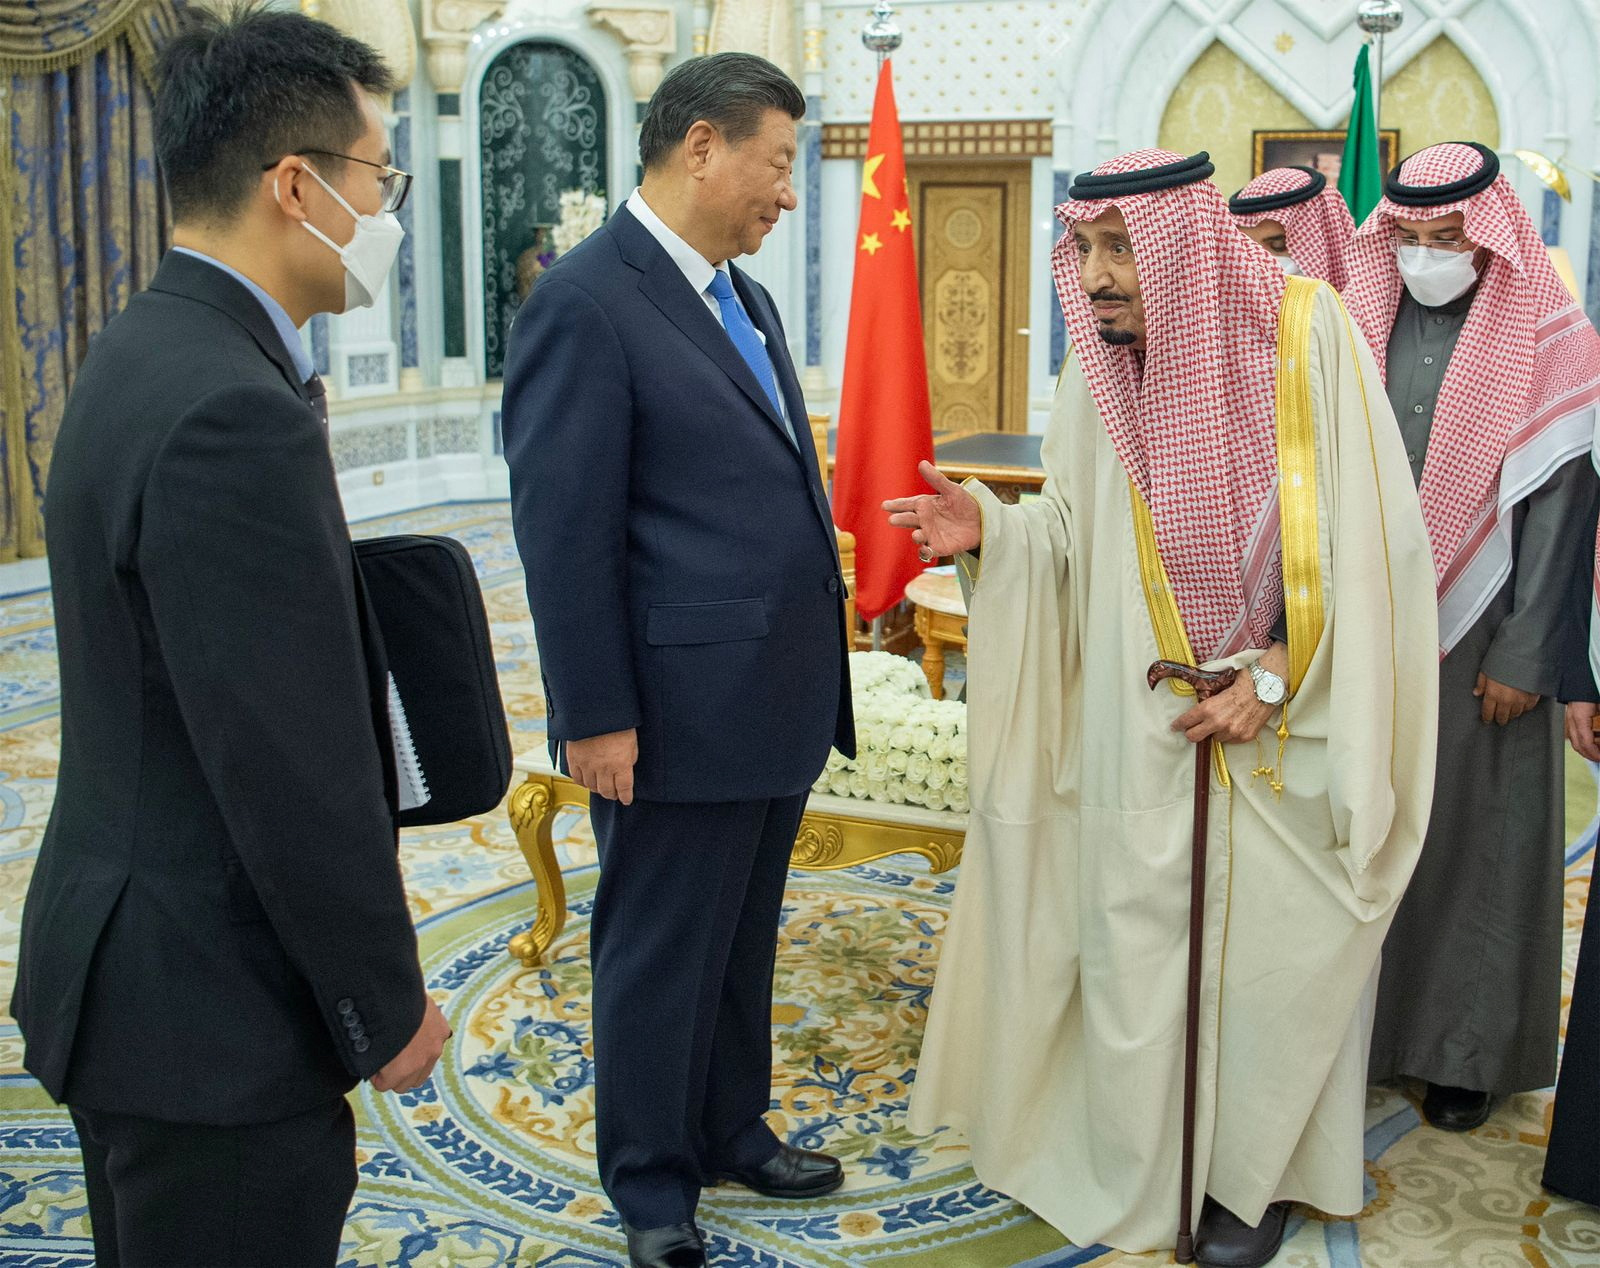 Saudi King Salman bin Abdulaziz meets with Chinese President Xi Jinping in Riyadh